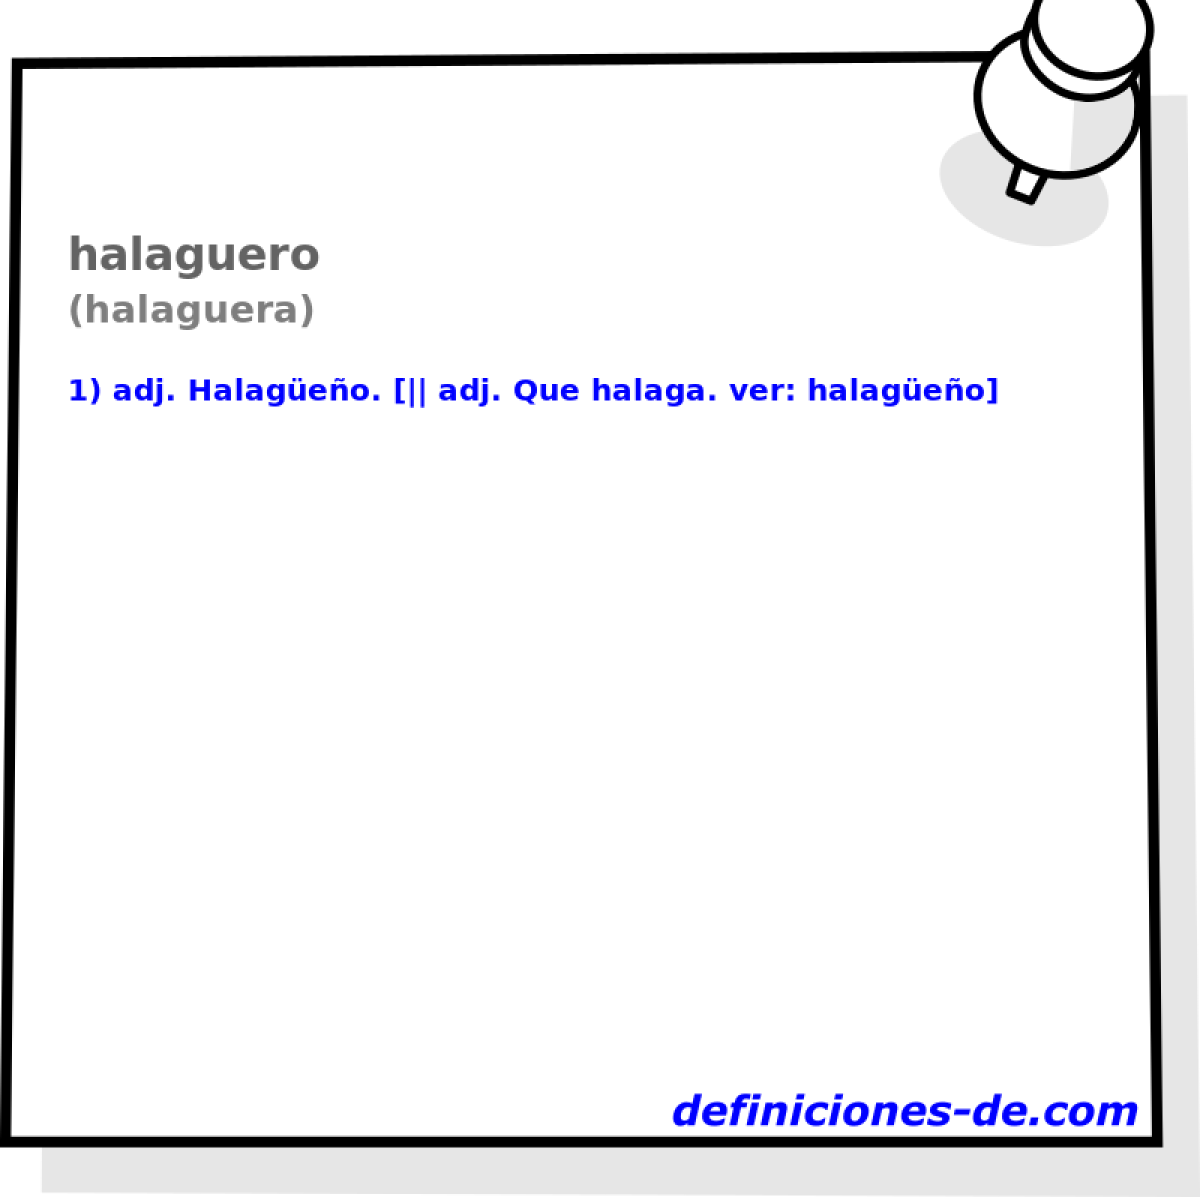 halaguero (halaguera)